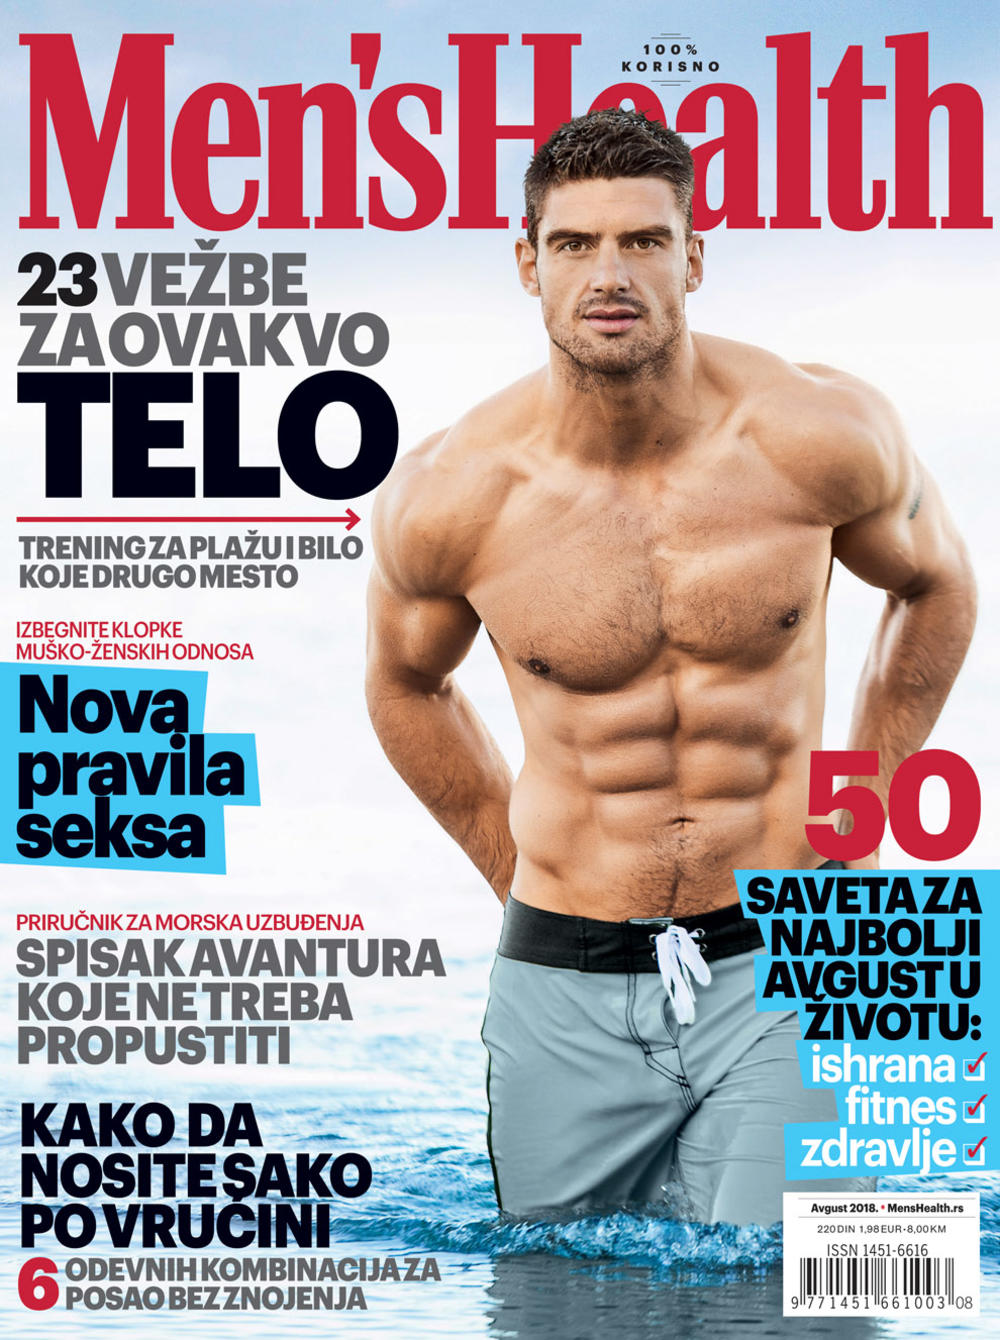 Novi broj magazina Men's Health je u prodaji